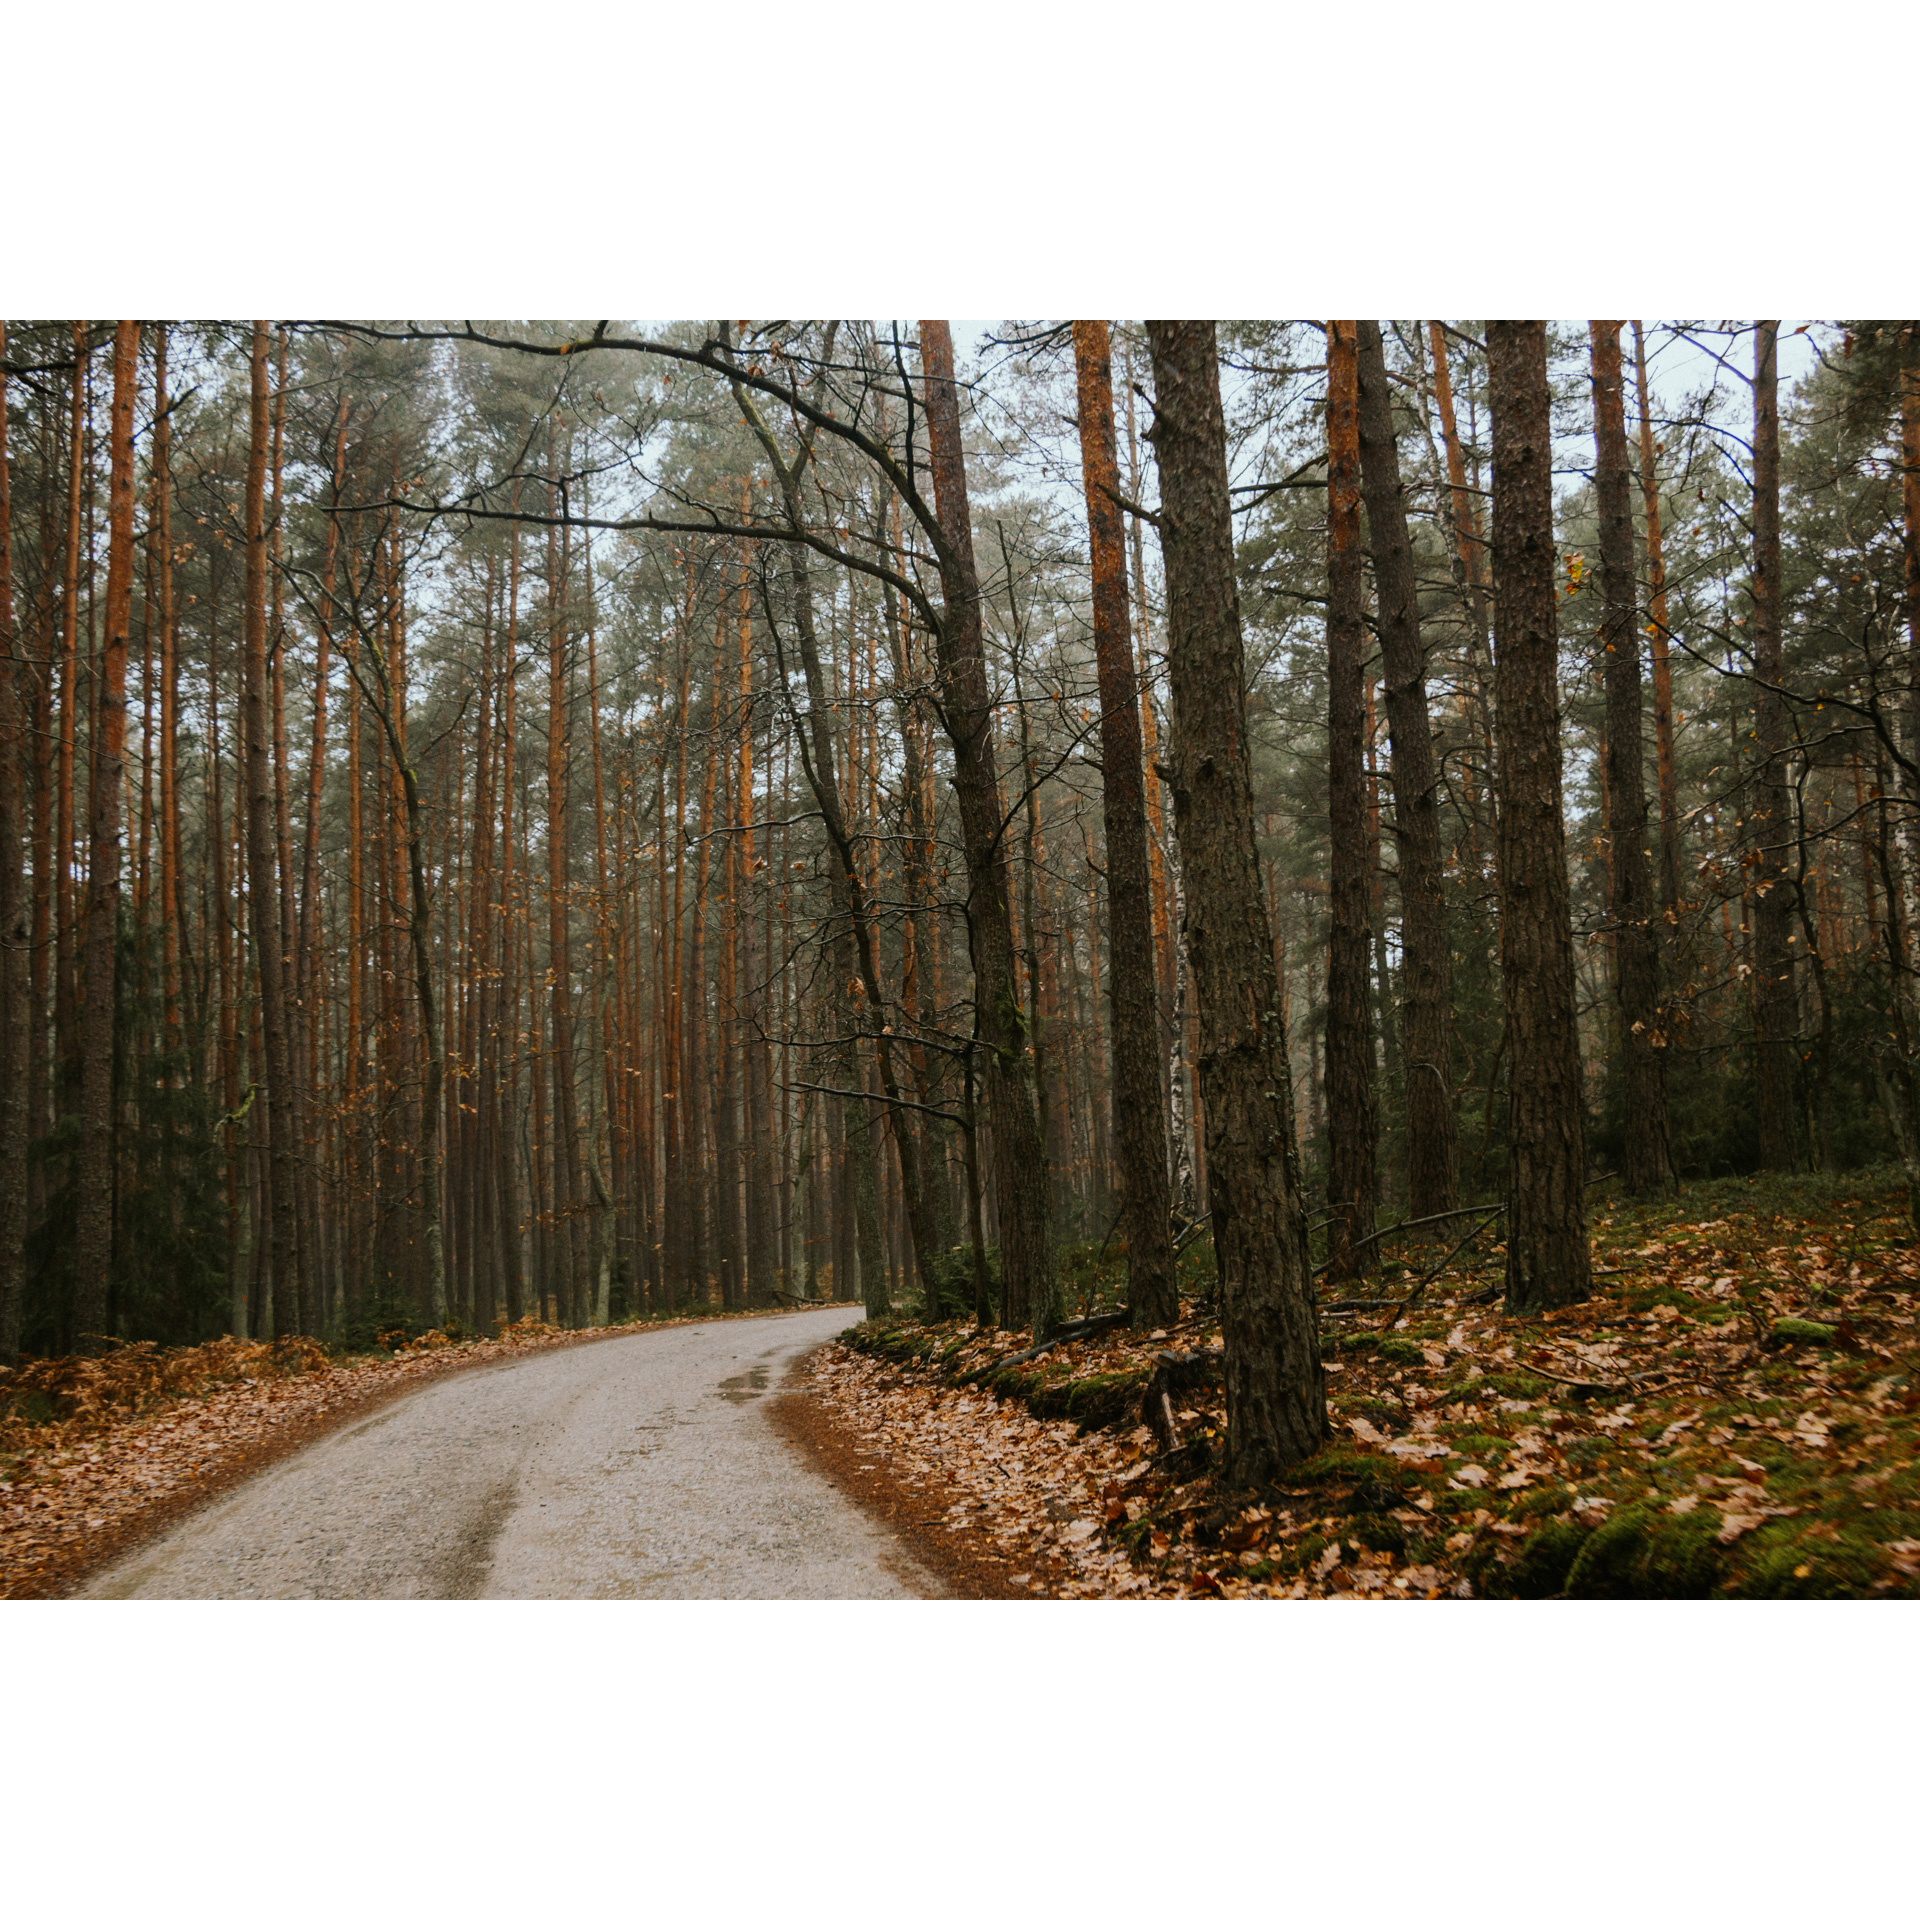 Utwardzona droga prowadząca przez jesienny las z pomarańczowymi liśćmi na poboczach